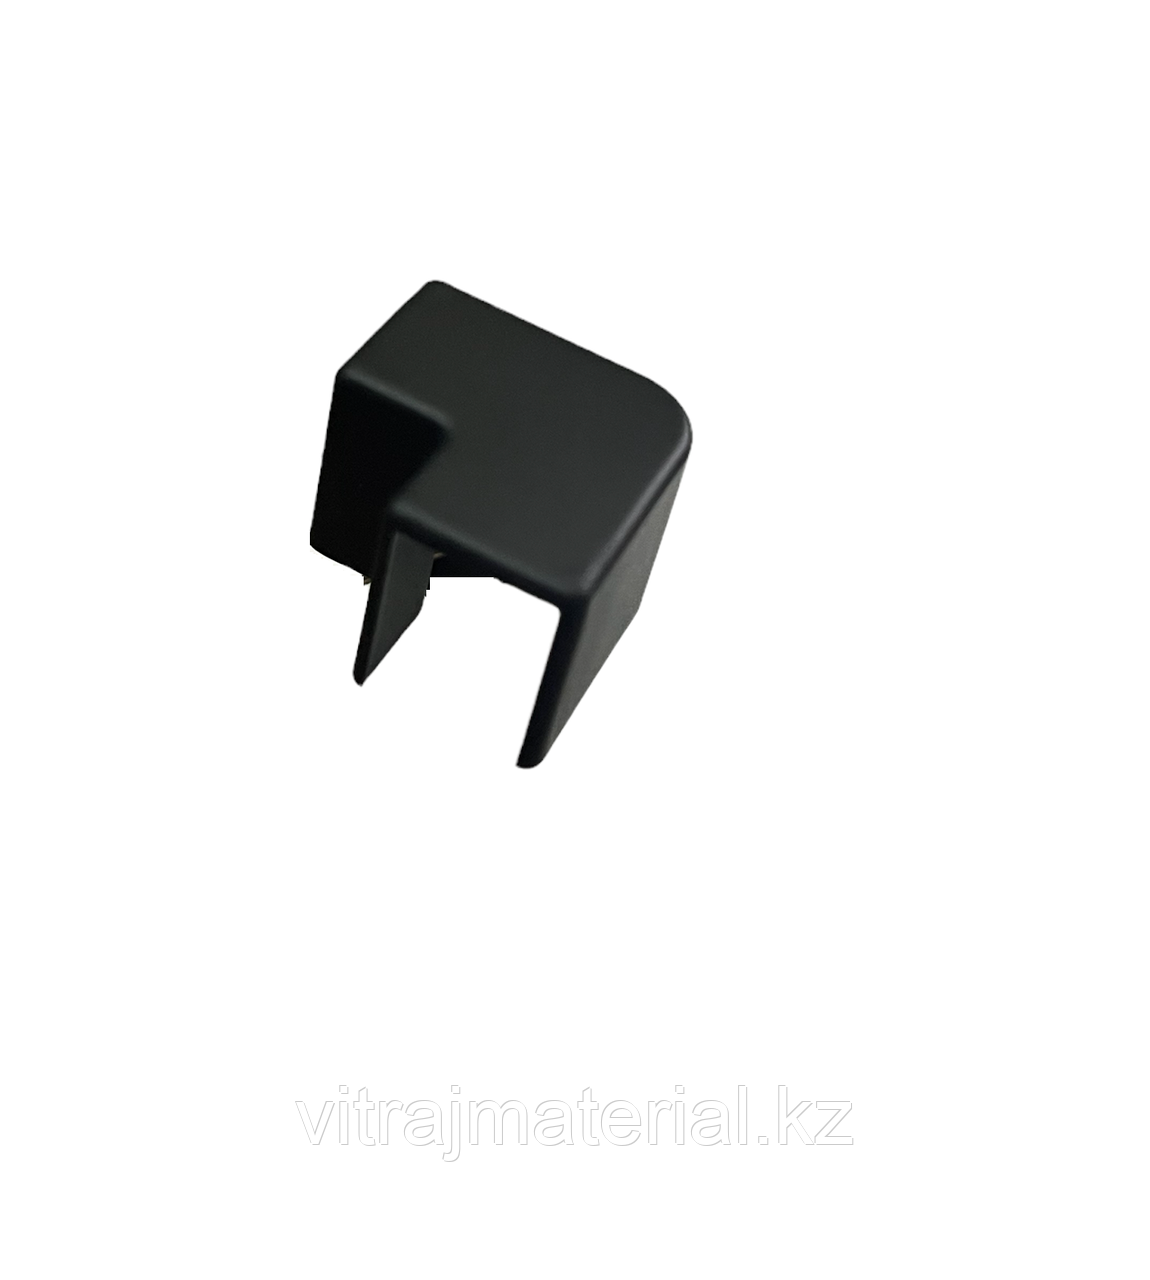 Уголок DG-1 стыковочный для опорного профиля| FGD-272BL | Черный